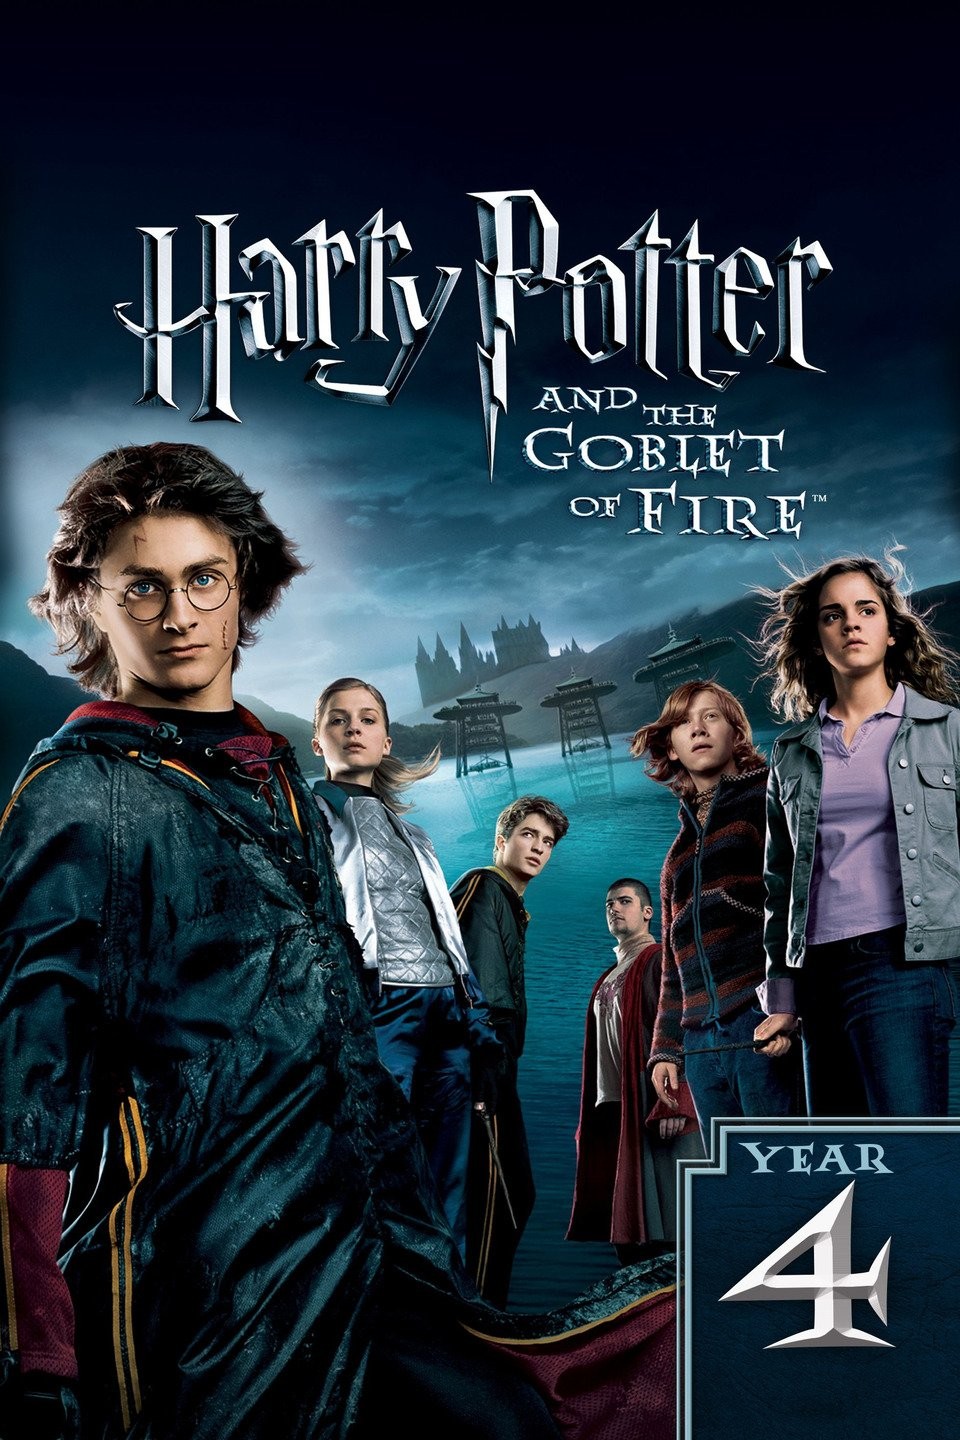 Harry Potter - L'intégrale des 8 films - Alfonso Cuarón;Chris